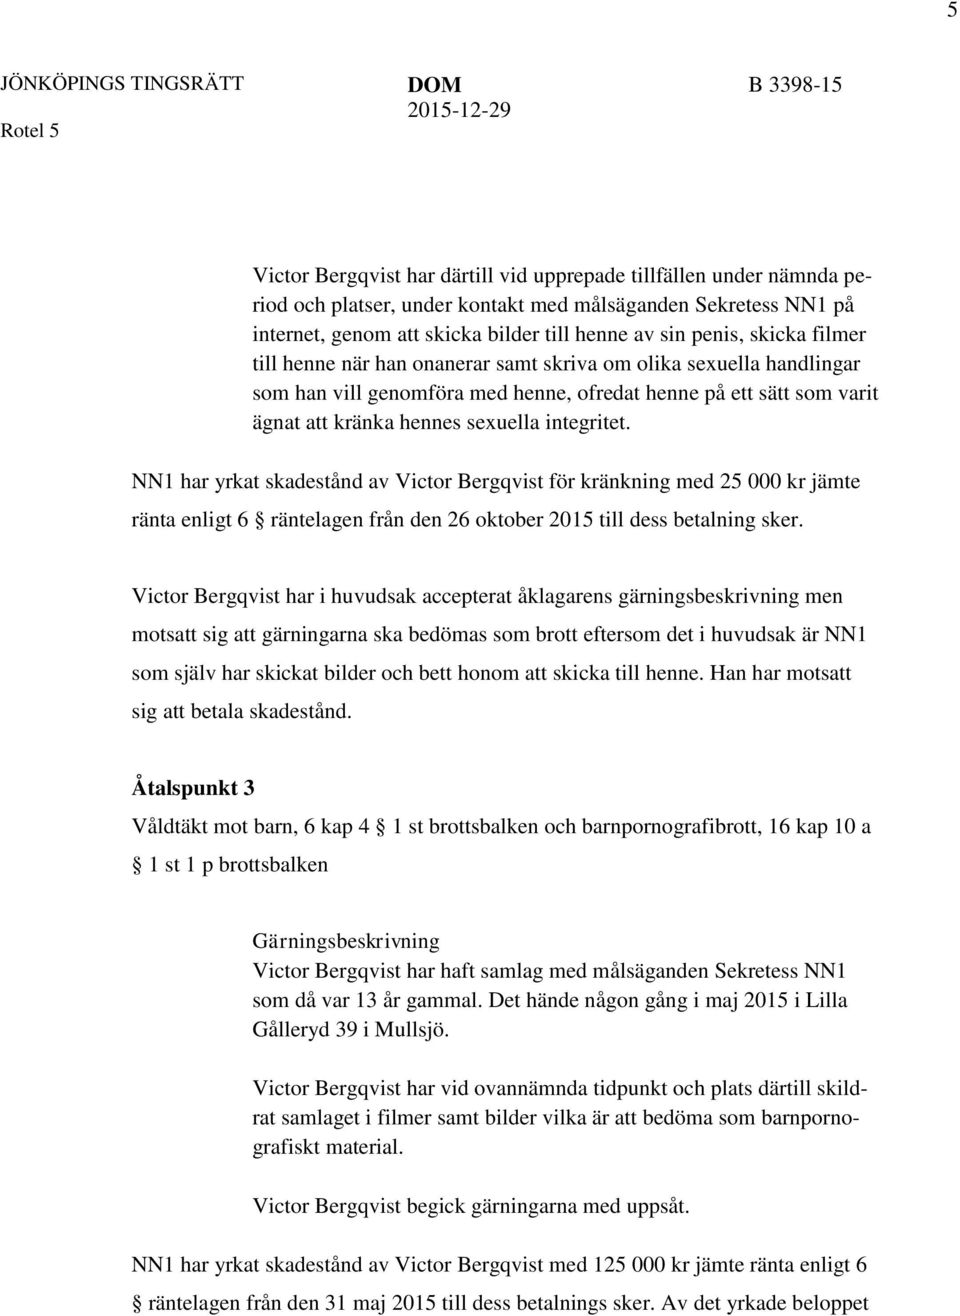 NN1 har yrkat skadestånd av Victor Bergqvist för kränkning med 25 000 kr jämte ränta enligt 6 räntelagen från den 26 oktober 2015 till dess betalning sker.